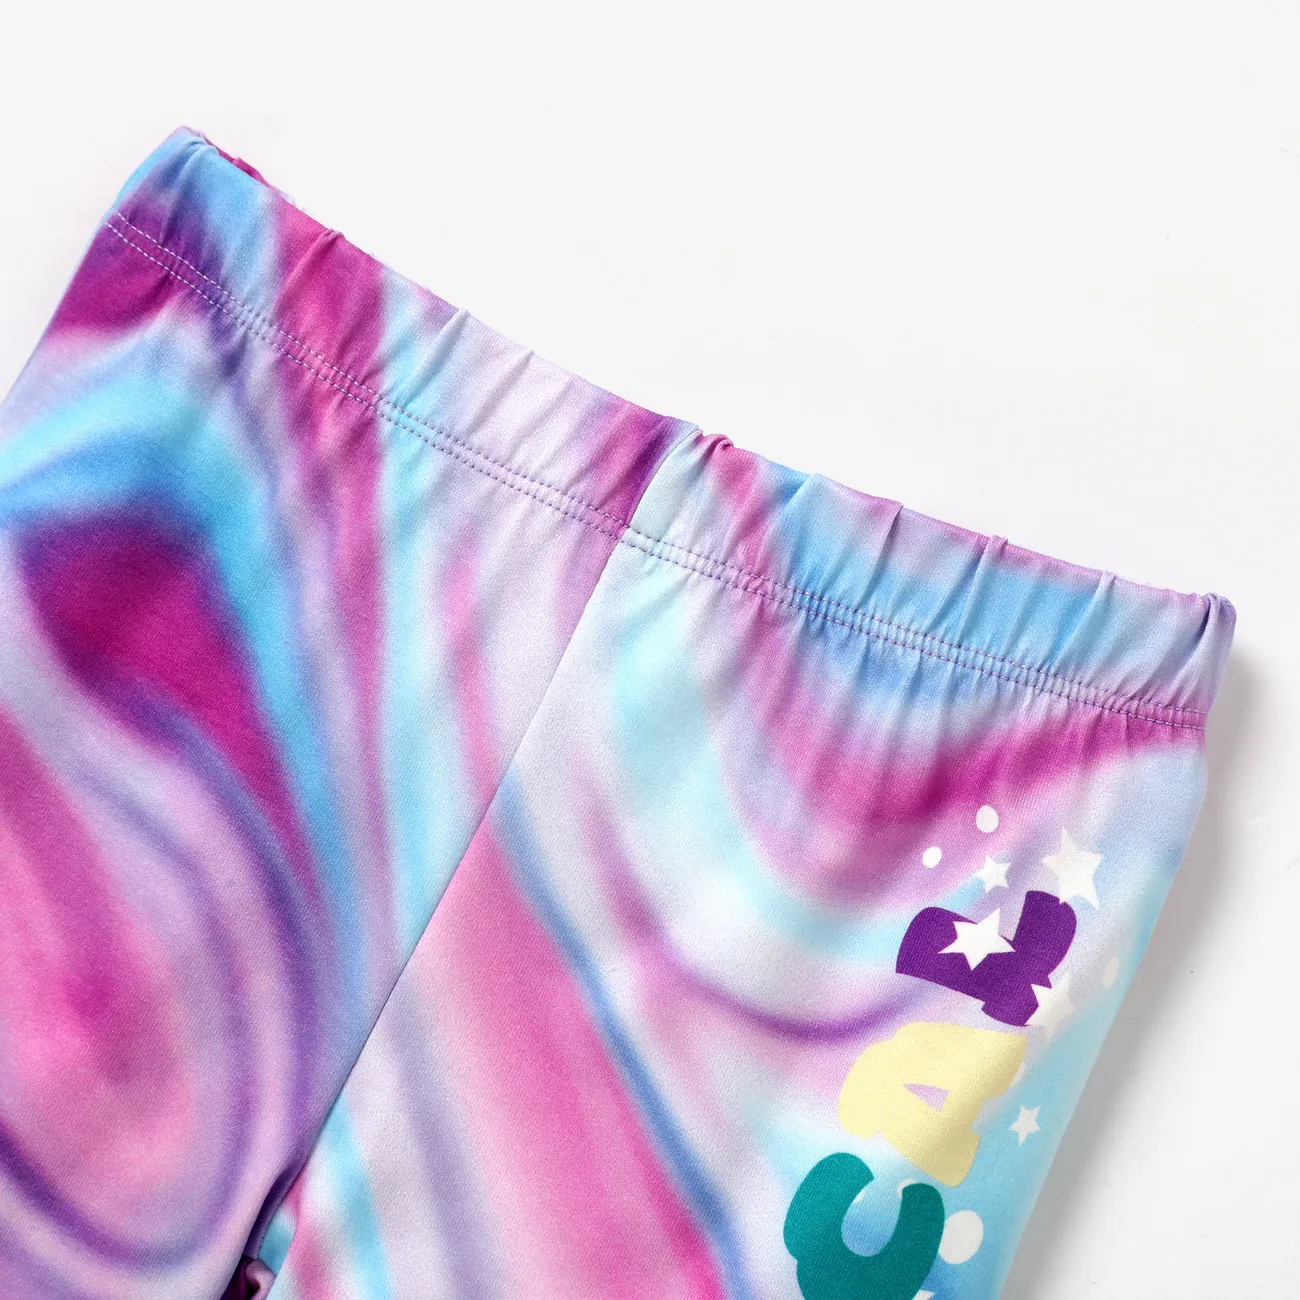 迪士尼公主 2pcs Todder/Kid Girl Colorful Rainbow Floral Pattern Set 紫色 big image 1